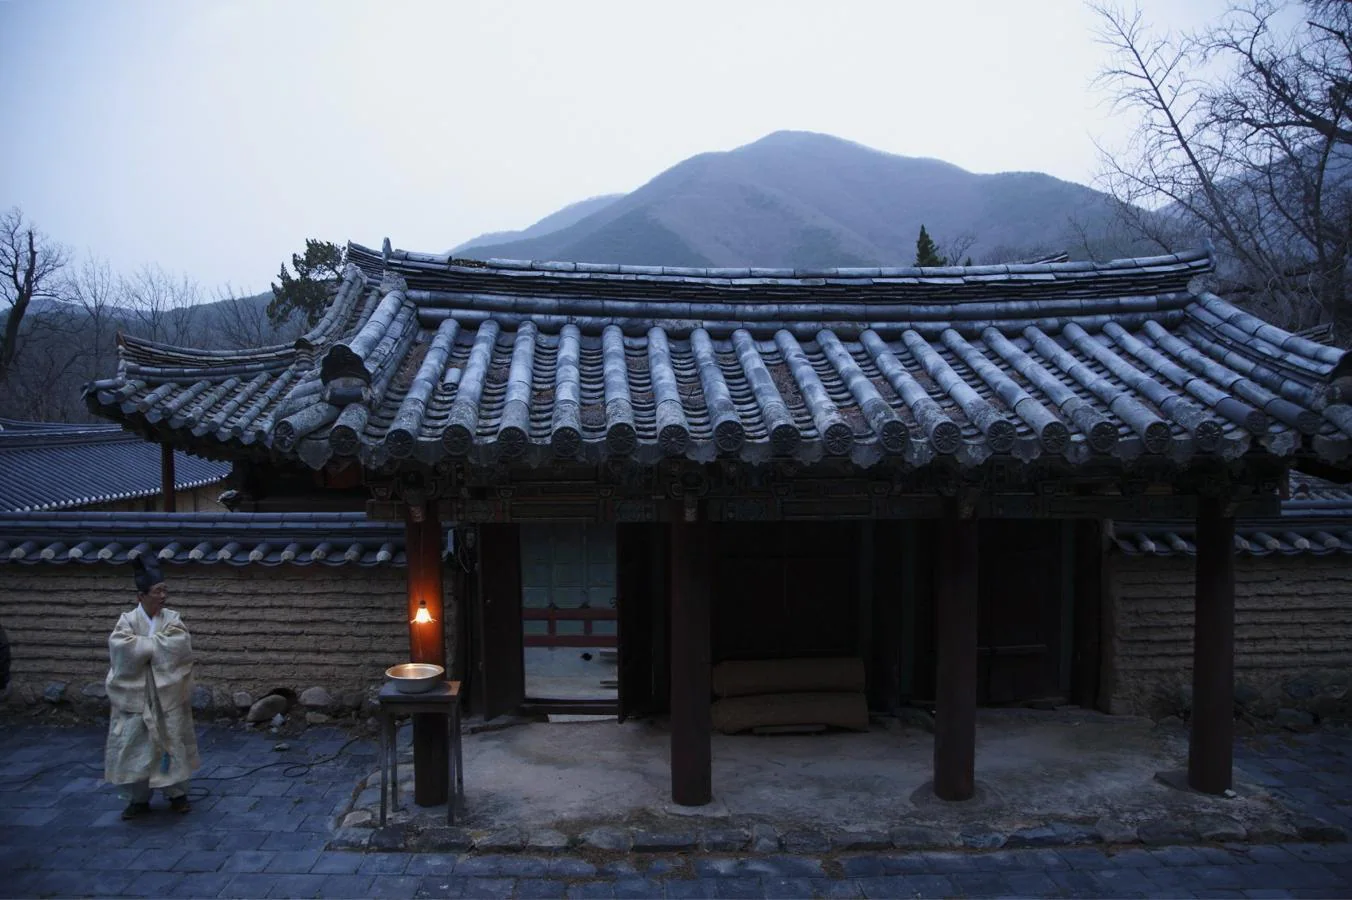 Academias confucianas (Corea del Sur). Estas instituciones privadas confucianas fueron establecidas durante la dinastía Joseon (1392-1910) para honrar a renombrados eruditos confucianos además de educar a los jóvenes